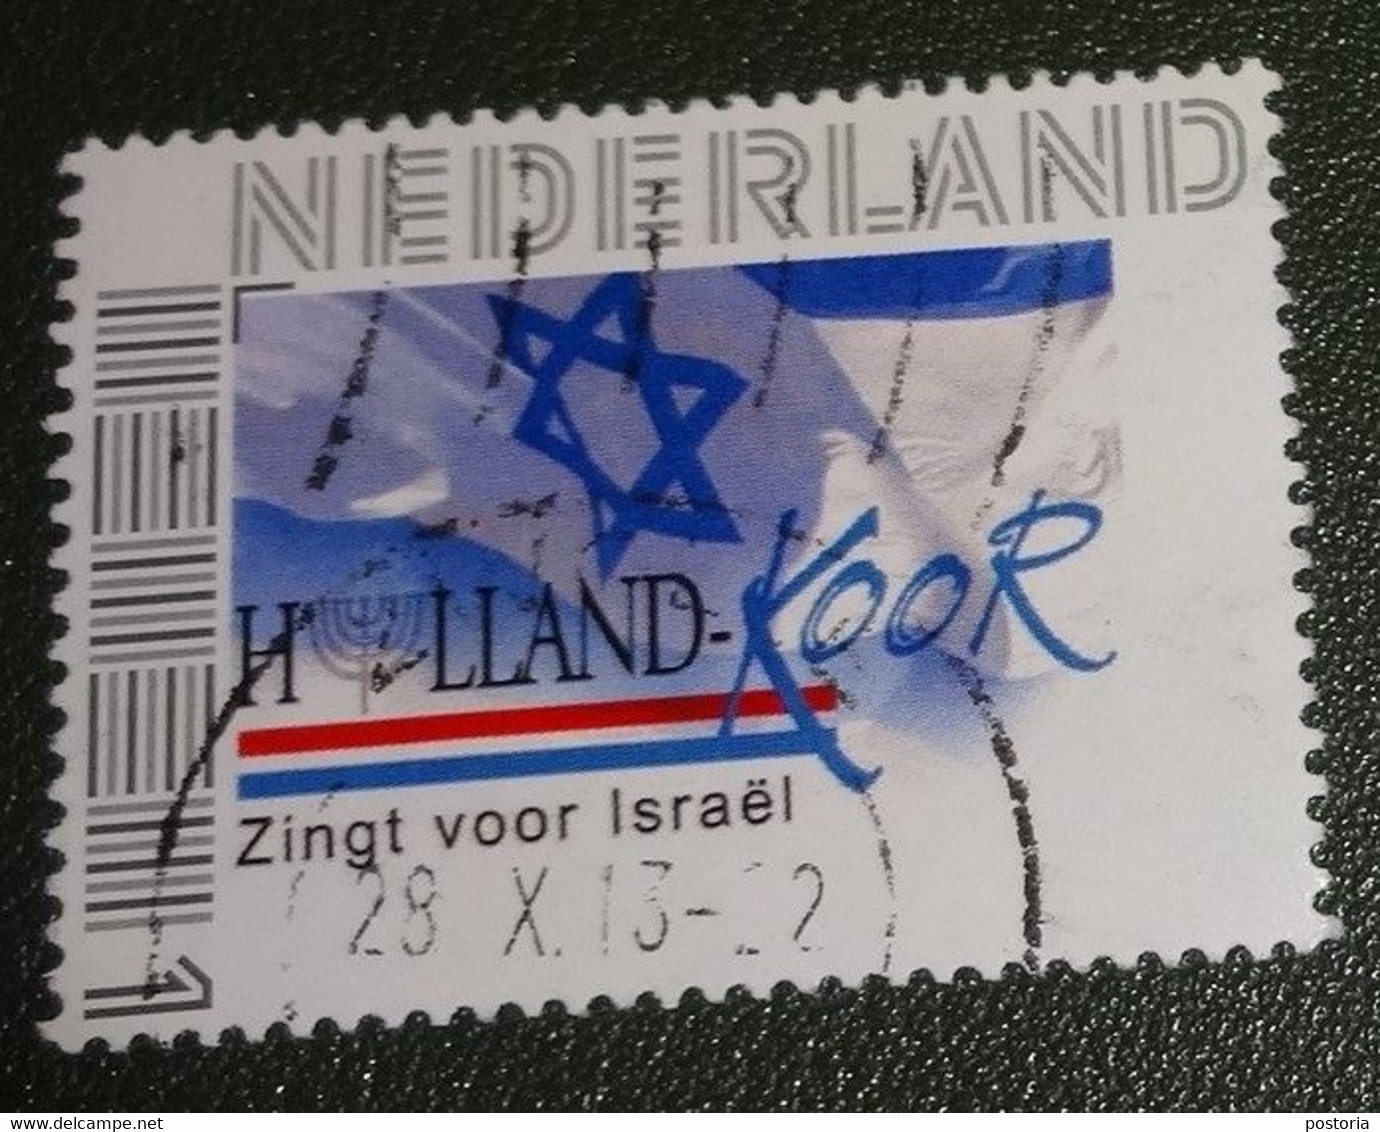 Nederland - NVPH - 2788 - 2011 - Persoonlijk Gebruikt - Cancelled - Holland Koor - Zingt Voor Israël - Timbres Personnalisés